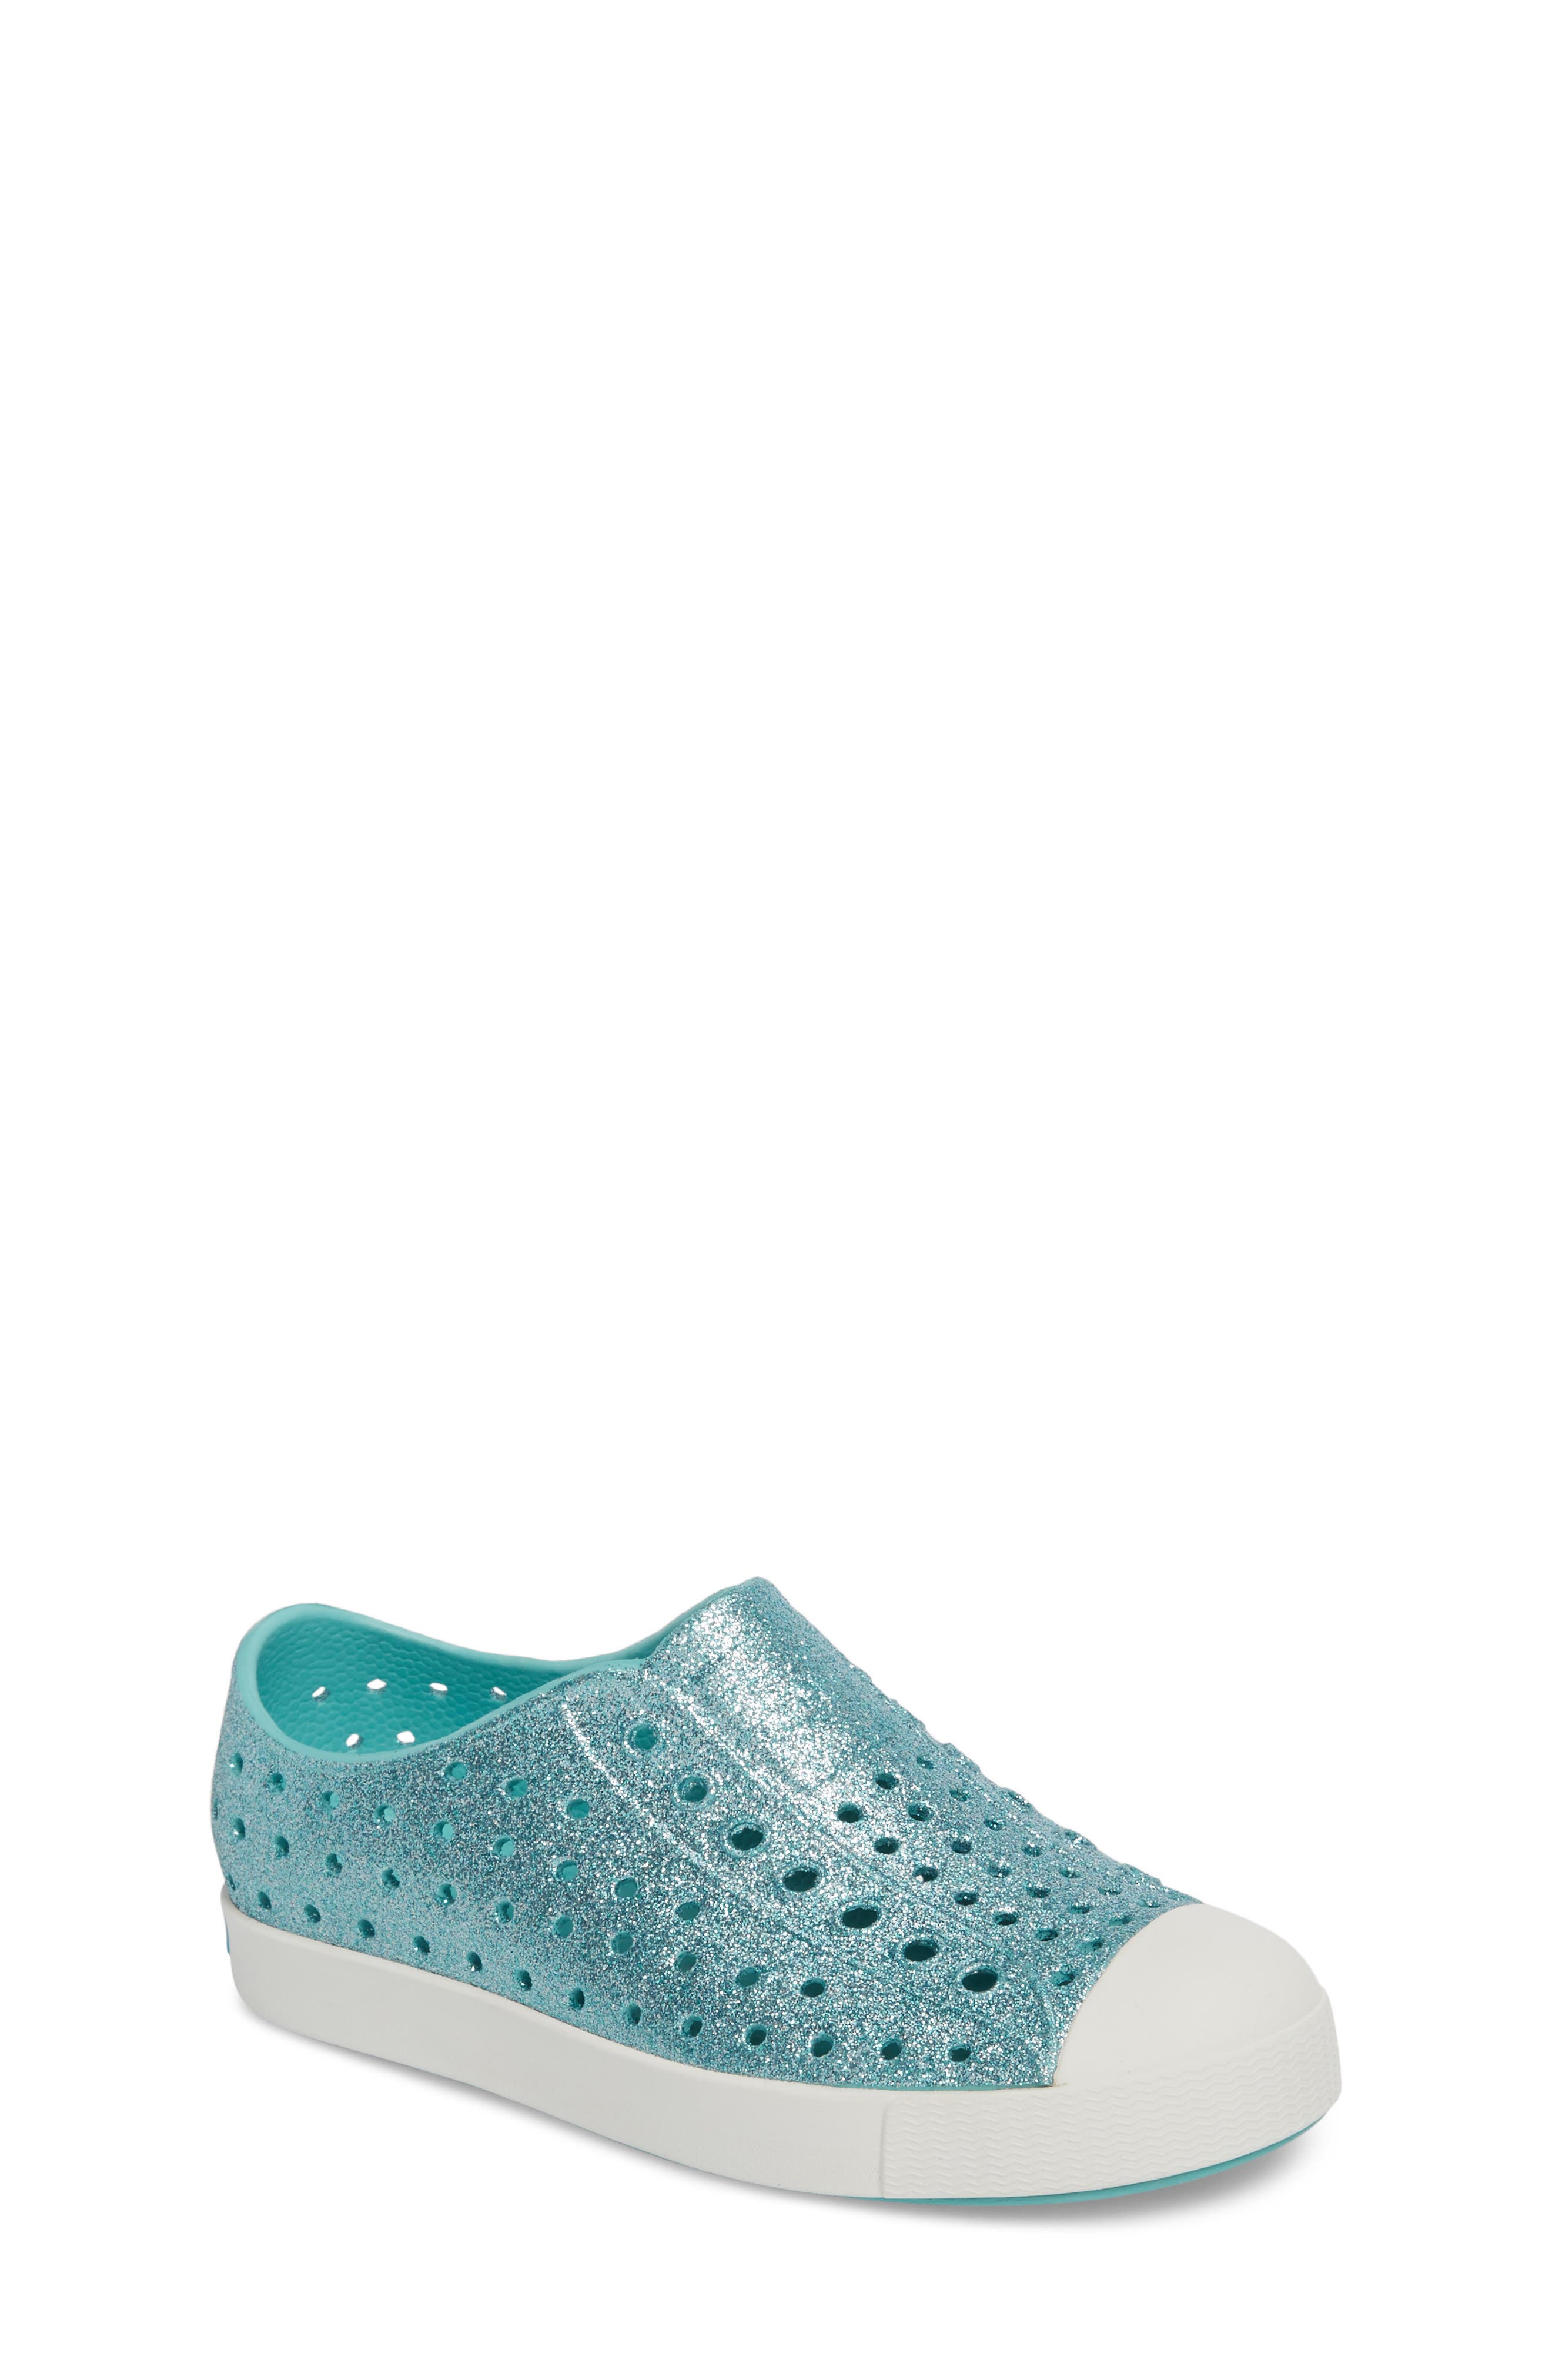 aqua shoes for babies